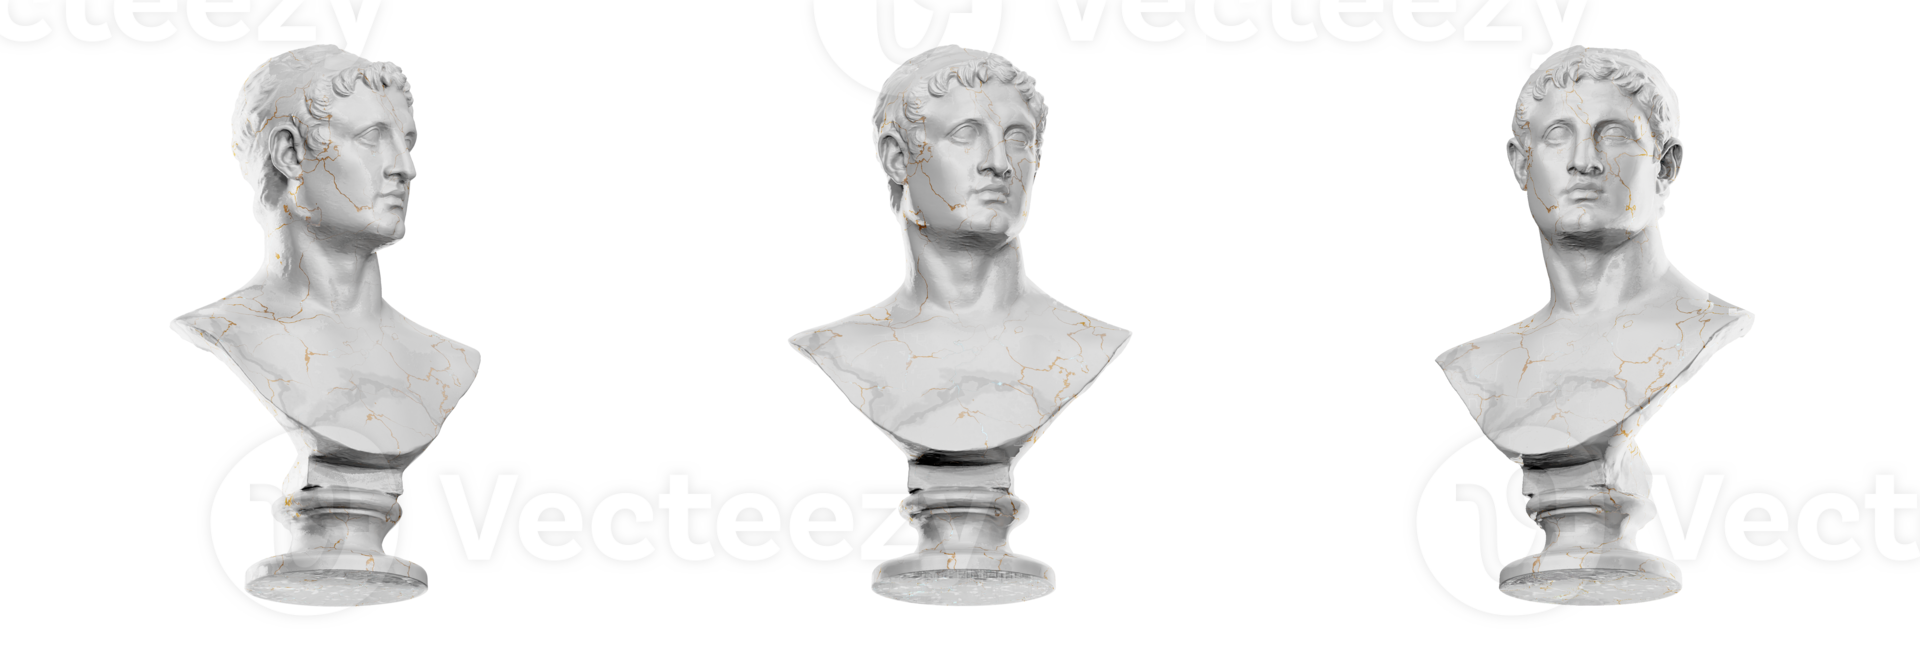 Ptolemy II Philadelphus statue in exquisite 3D render png